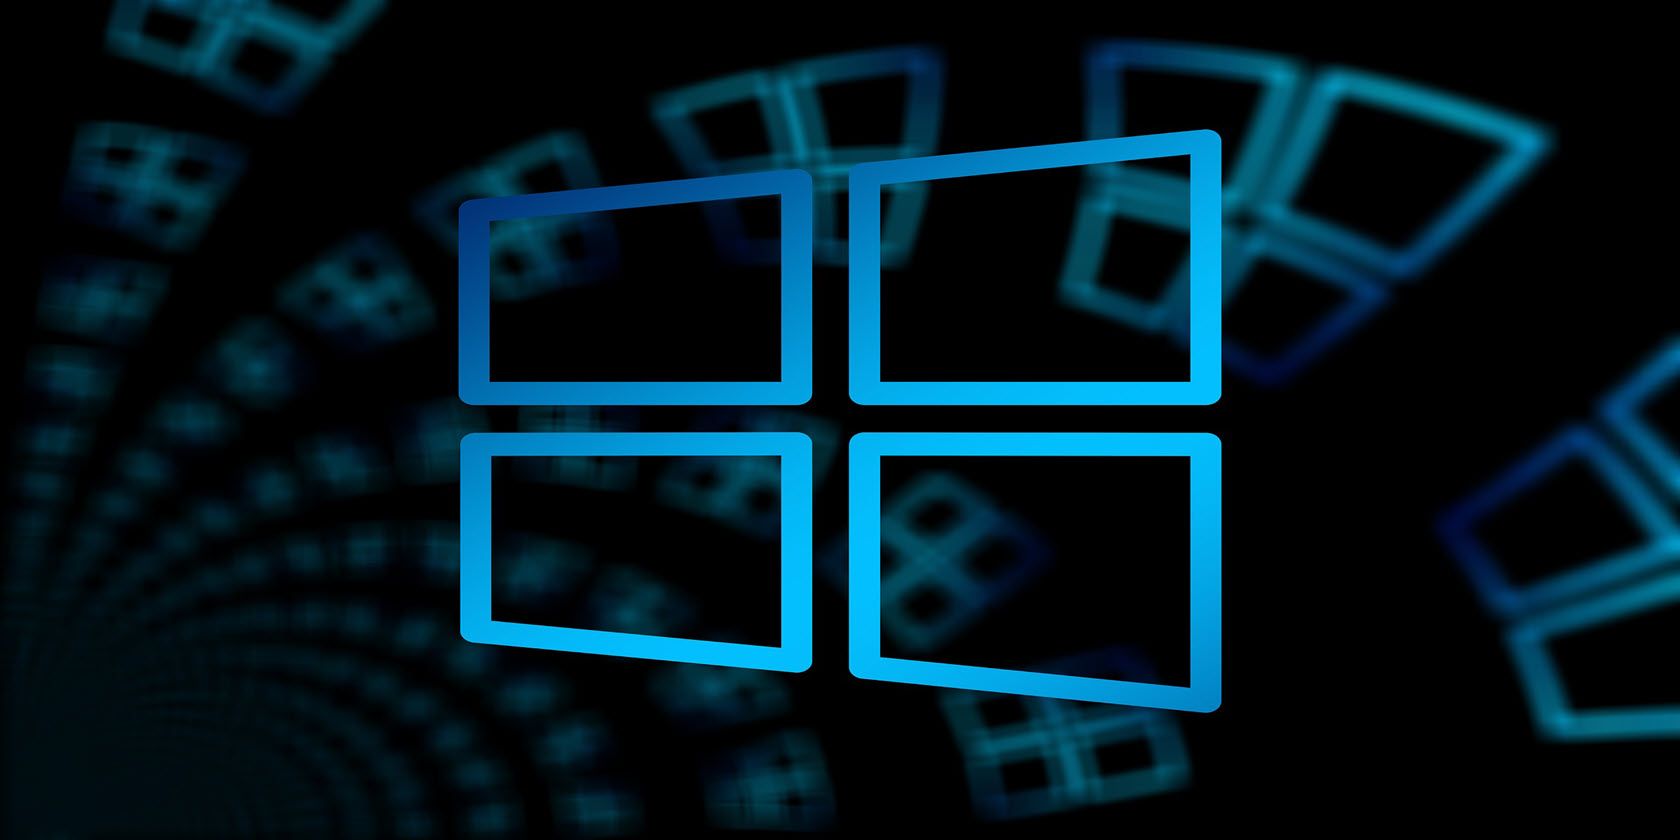 Windows logo in blue